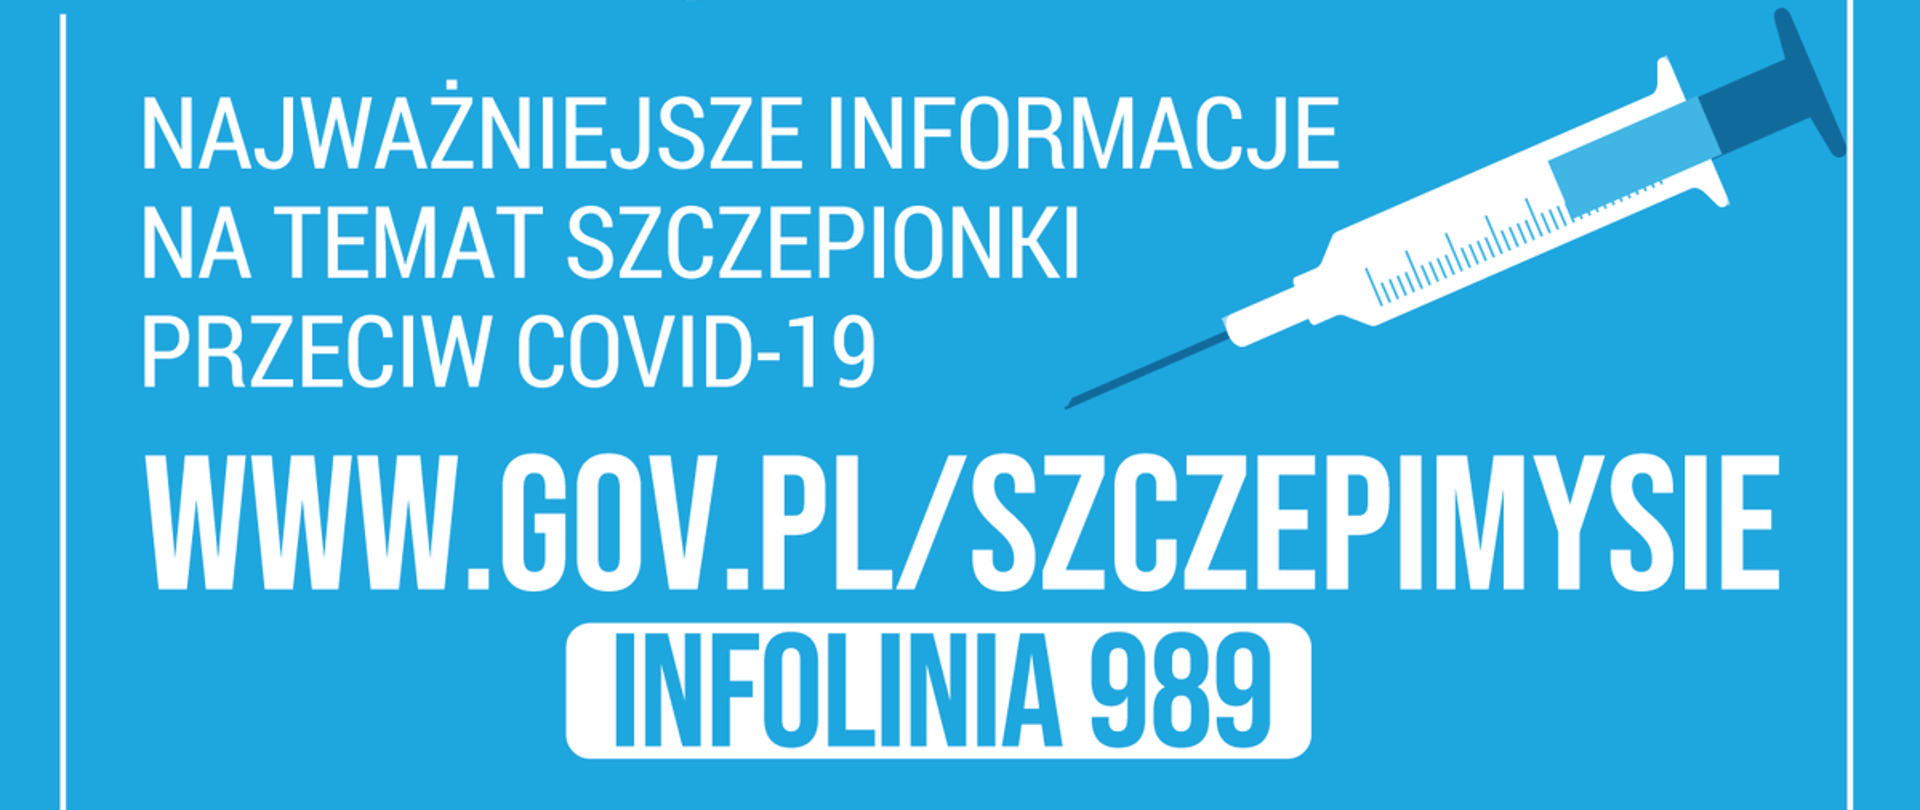 niebieski baner z napisem: Najważniejsze informacje na temat szczepionki przeciw COVID-19 www.gov.pl/szczepimysie, Infolinia 989